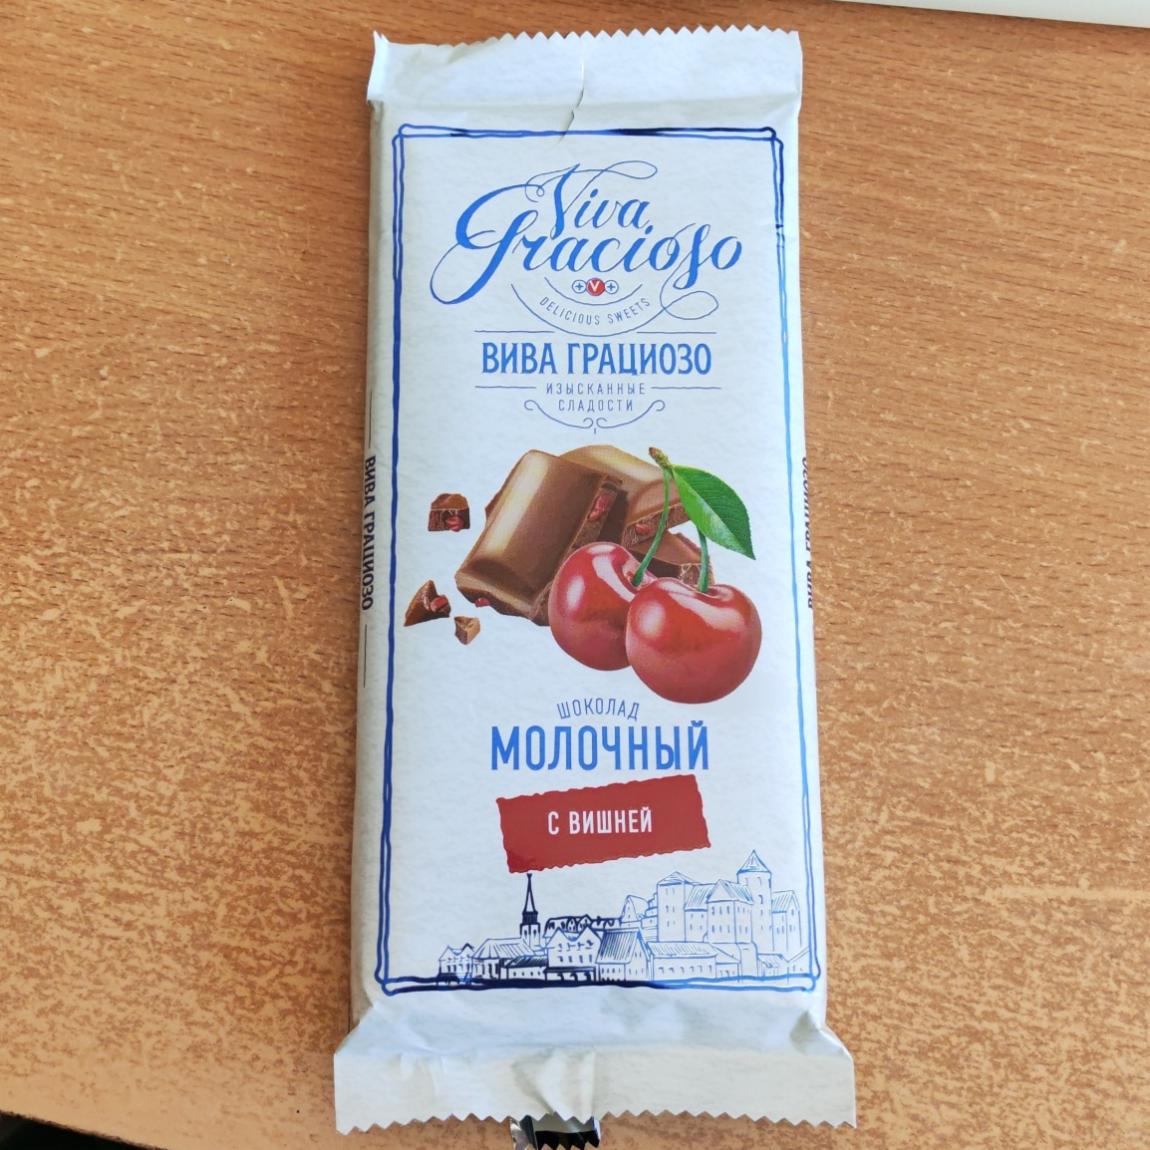 Фото - Шоколад молочный с вишней Спартак Viva Gracioso